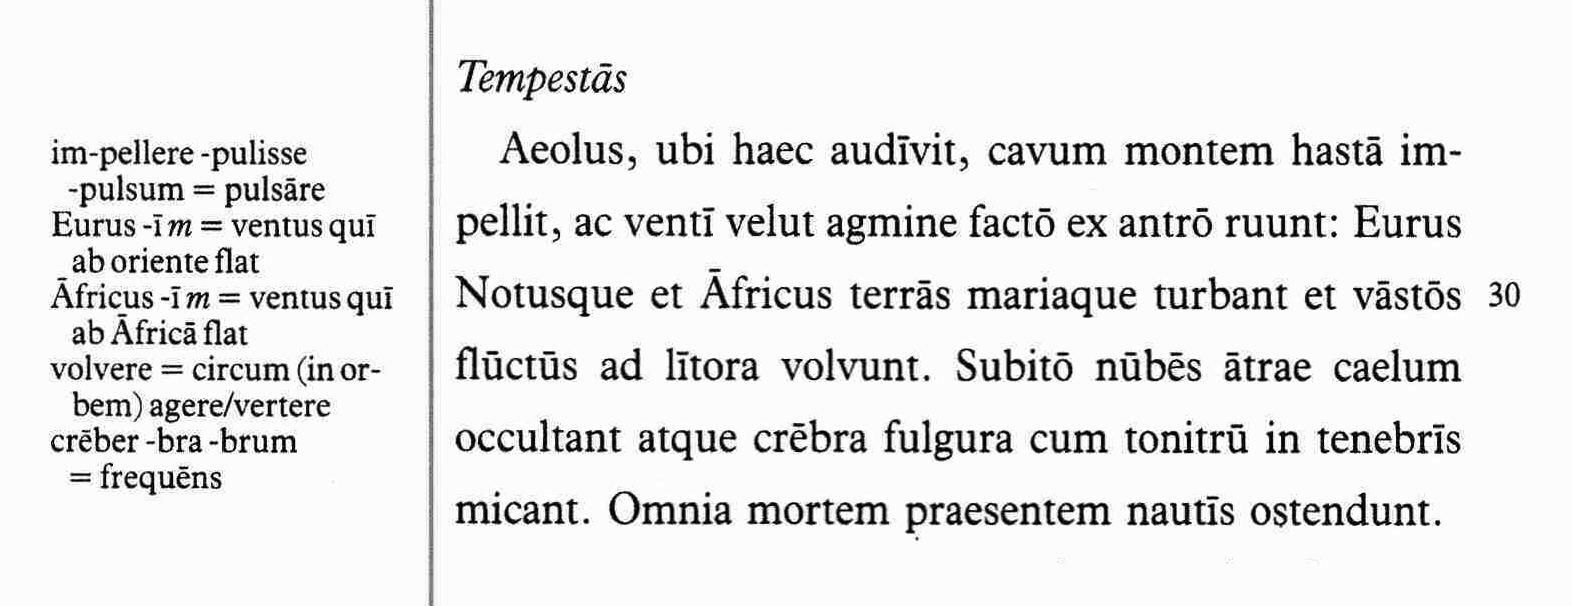 Фрагмент из учебника Roma Aeterna — на полях видны пояснения